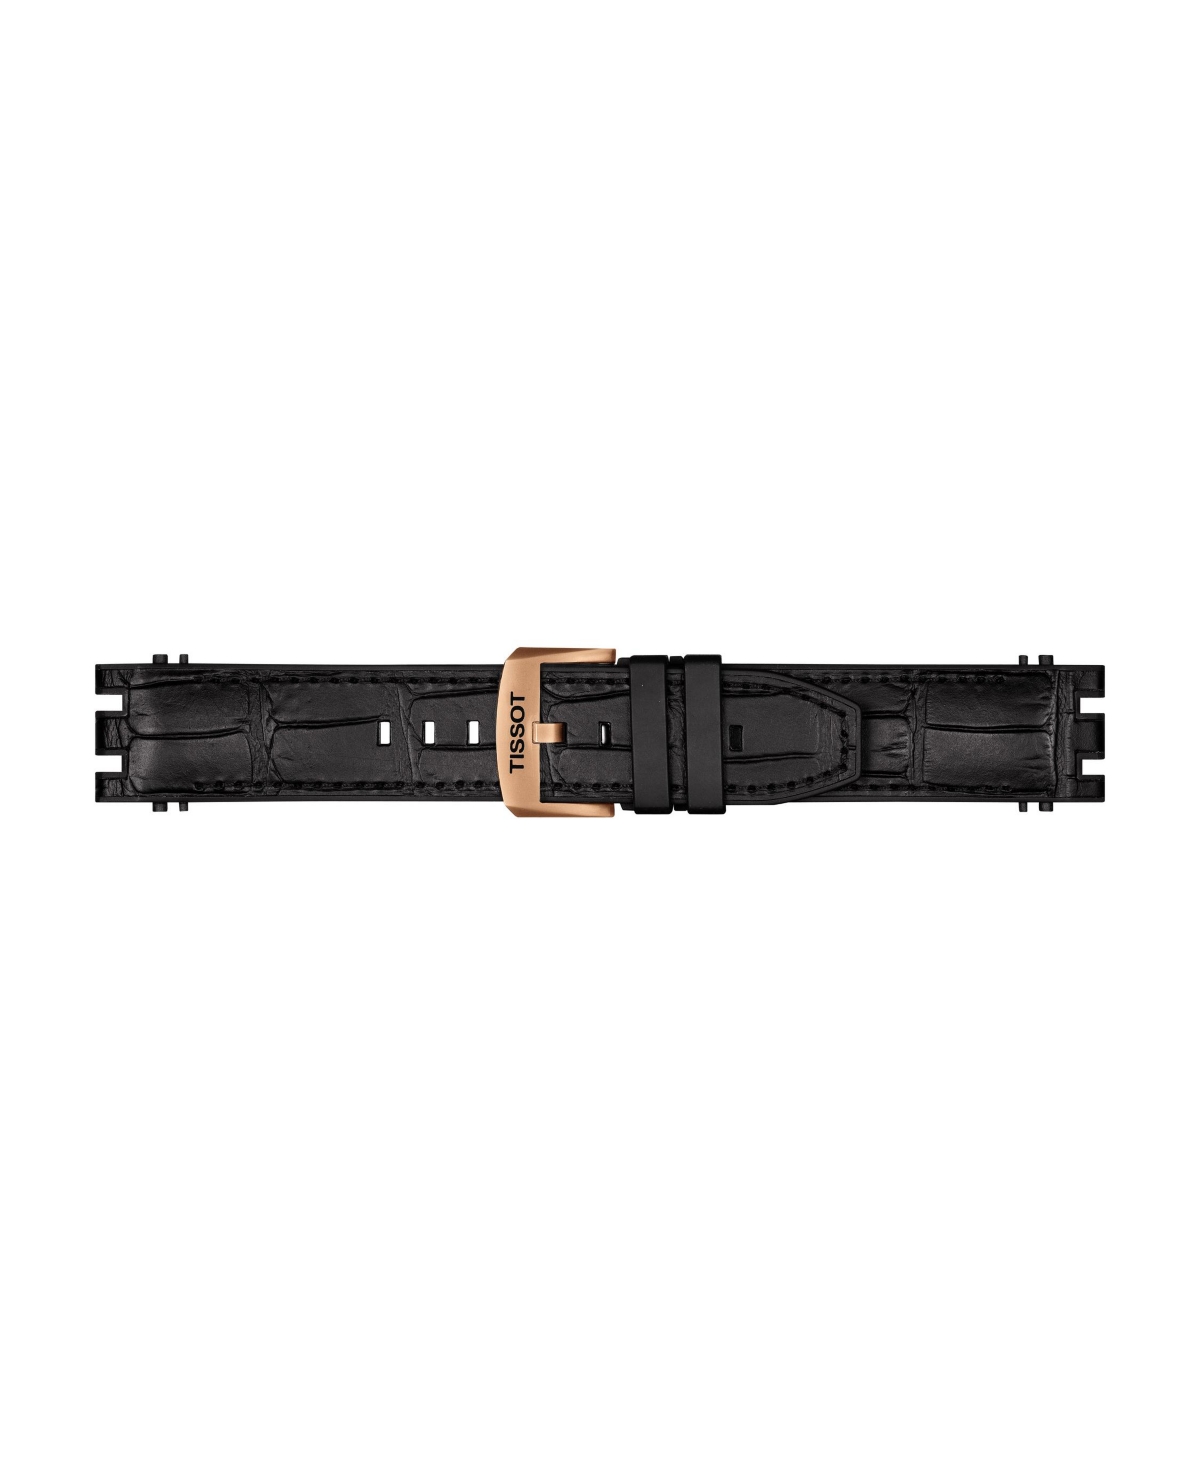 Shop Tissot Men's Swiss Automatic Chronograph T-race Black Rubber Strap Watch 48.8mm